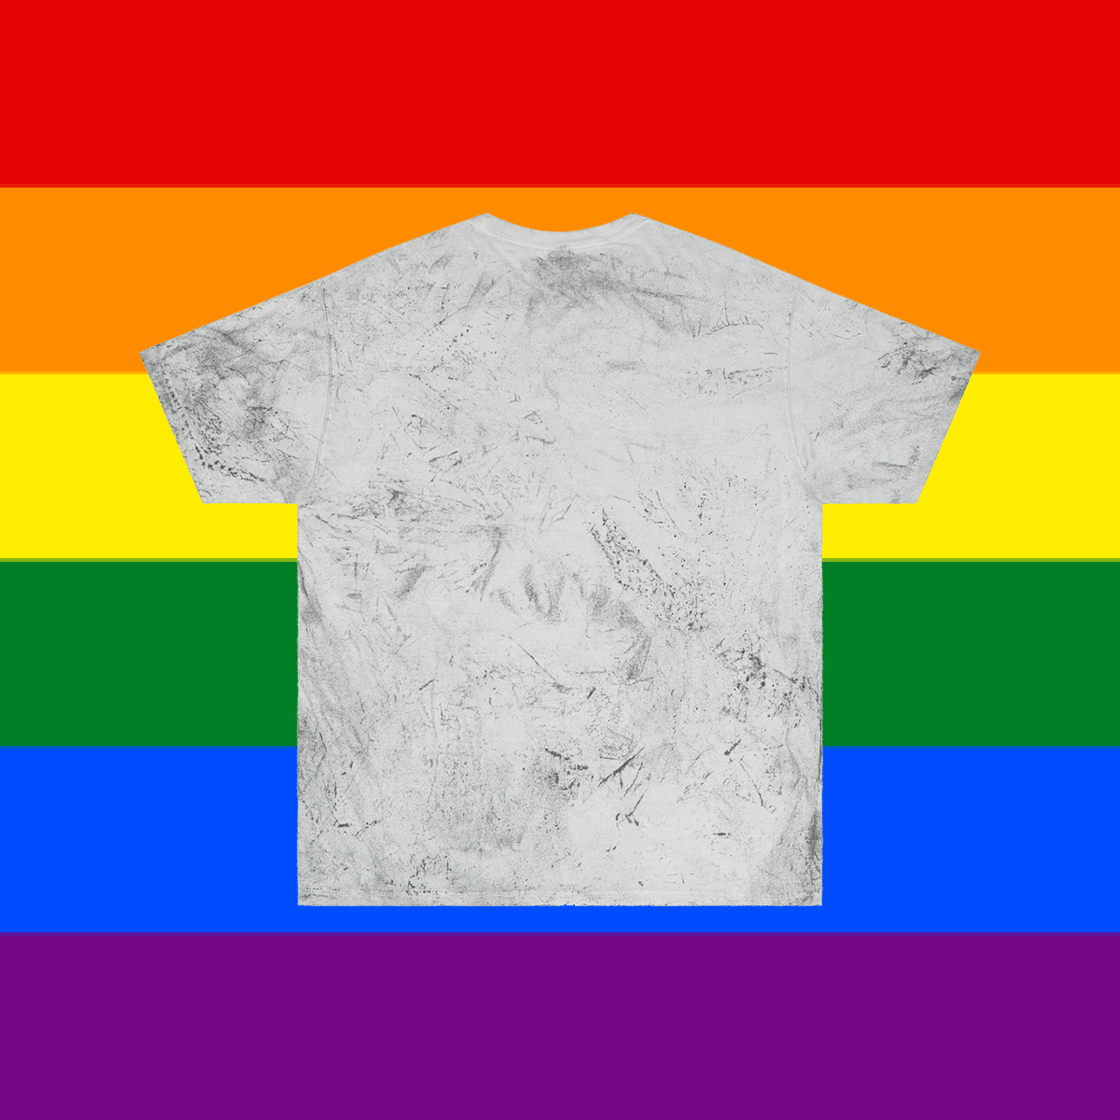 Image of PRIDE 2022 | Skatune Logo | Gay Pride Flag Colors | Dark Mineral Wash Comfort Colors Shirt